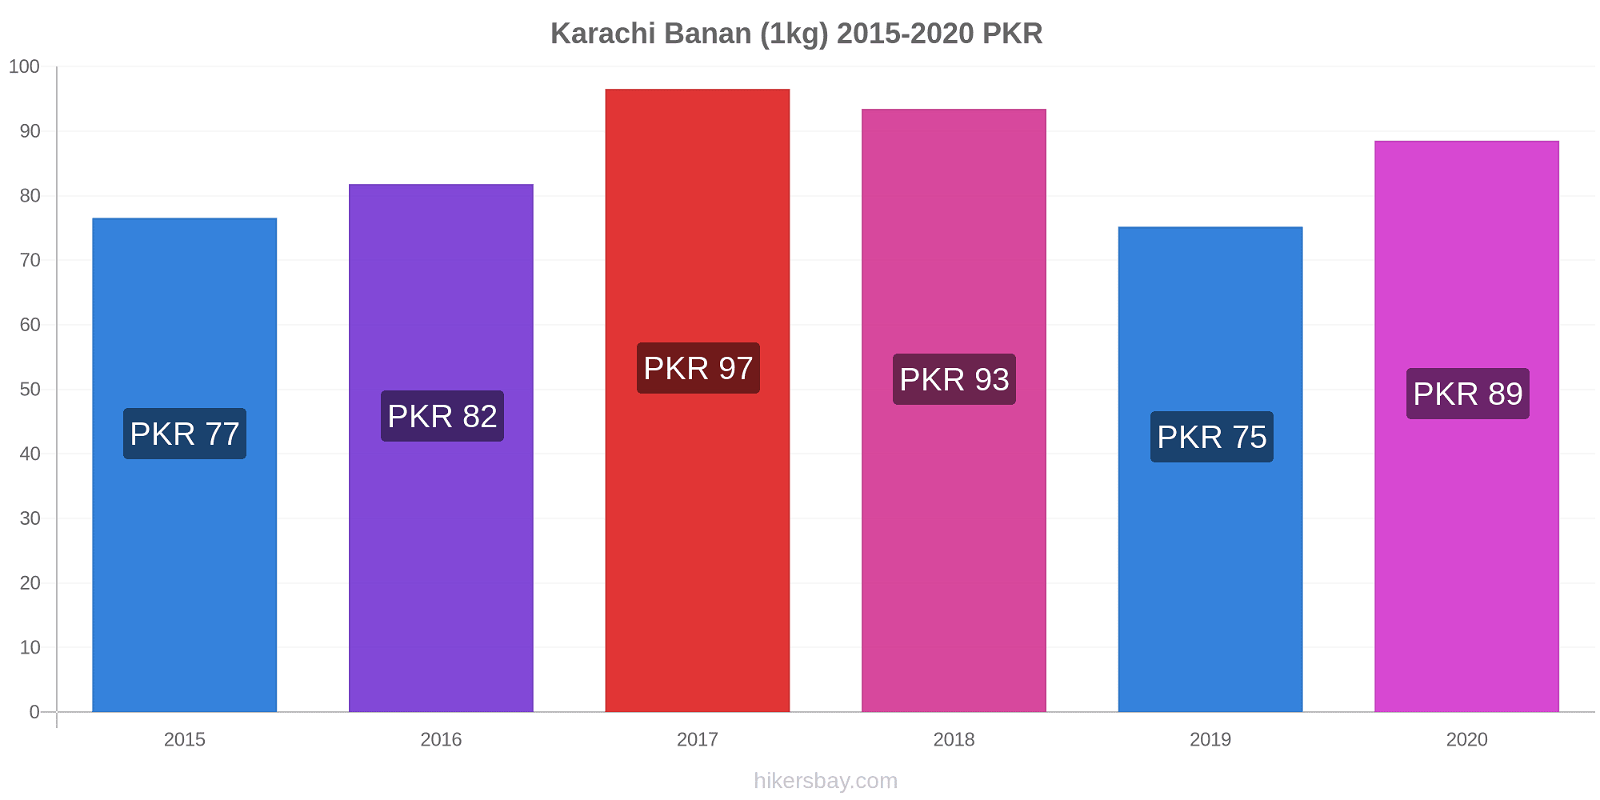 Karachi prisændringer Banan (1kg) hikersbay.com